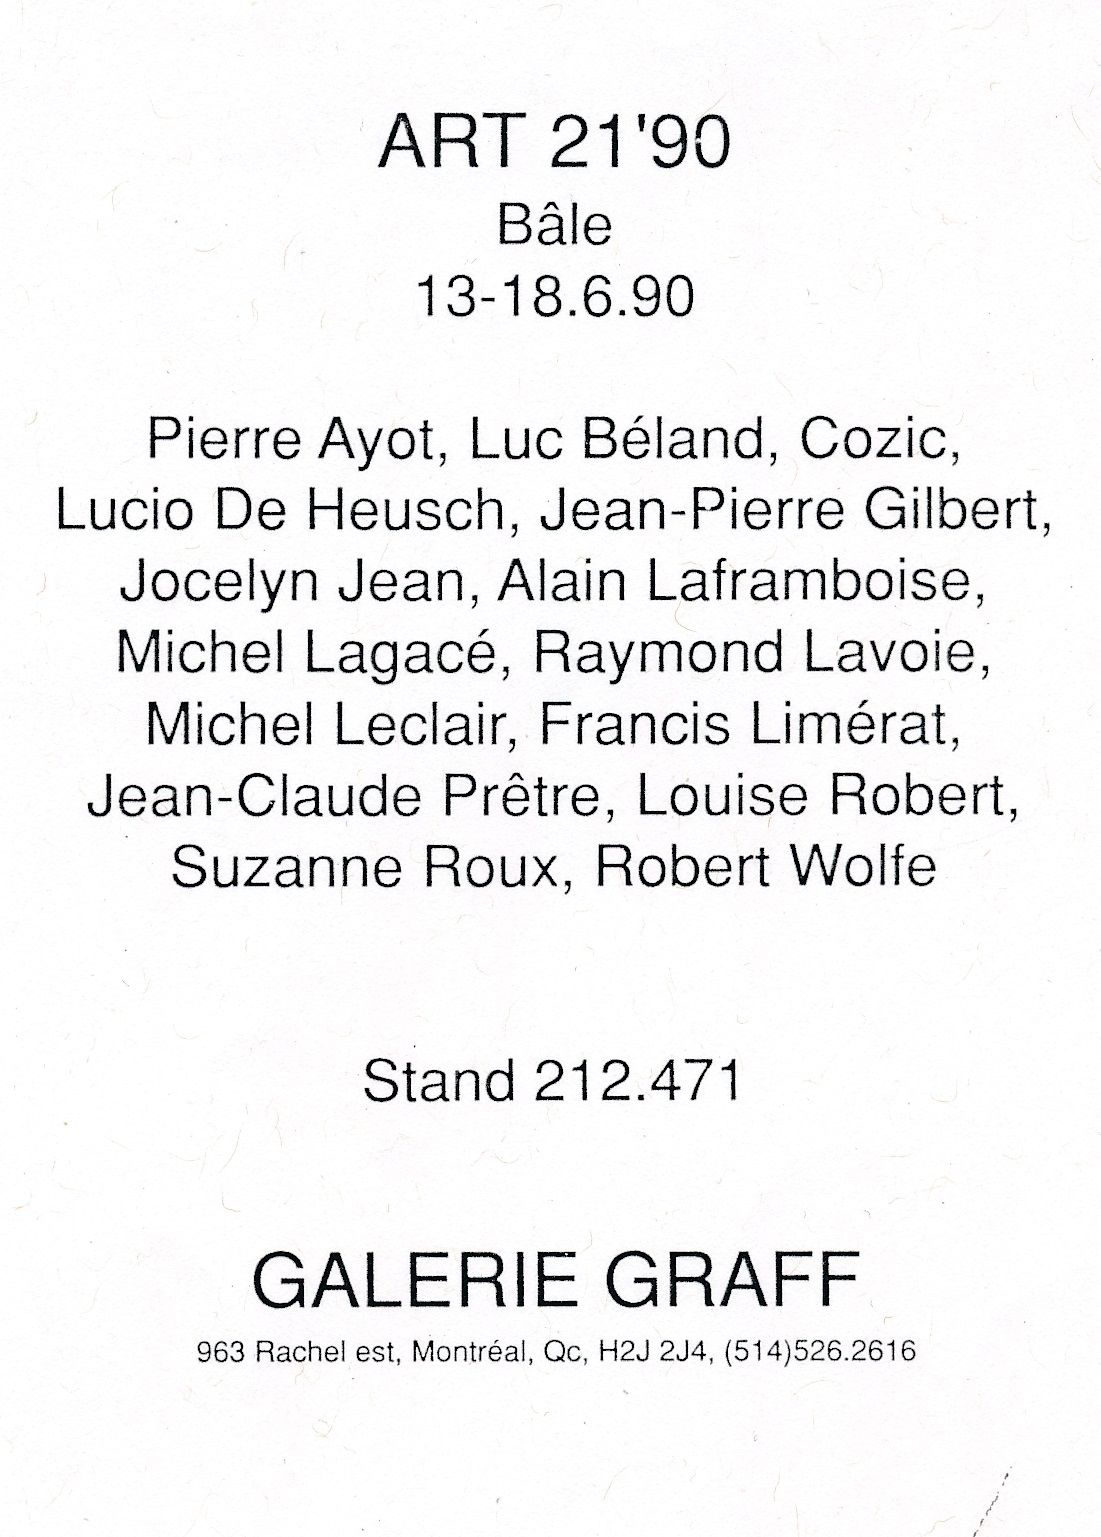 Cartons d’invitation de l’exposition Art 21'90, Foire internationale de Bâle, Espace 212.471-Galerie Graff, Bâle, Suisse, 1990. Verso.